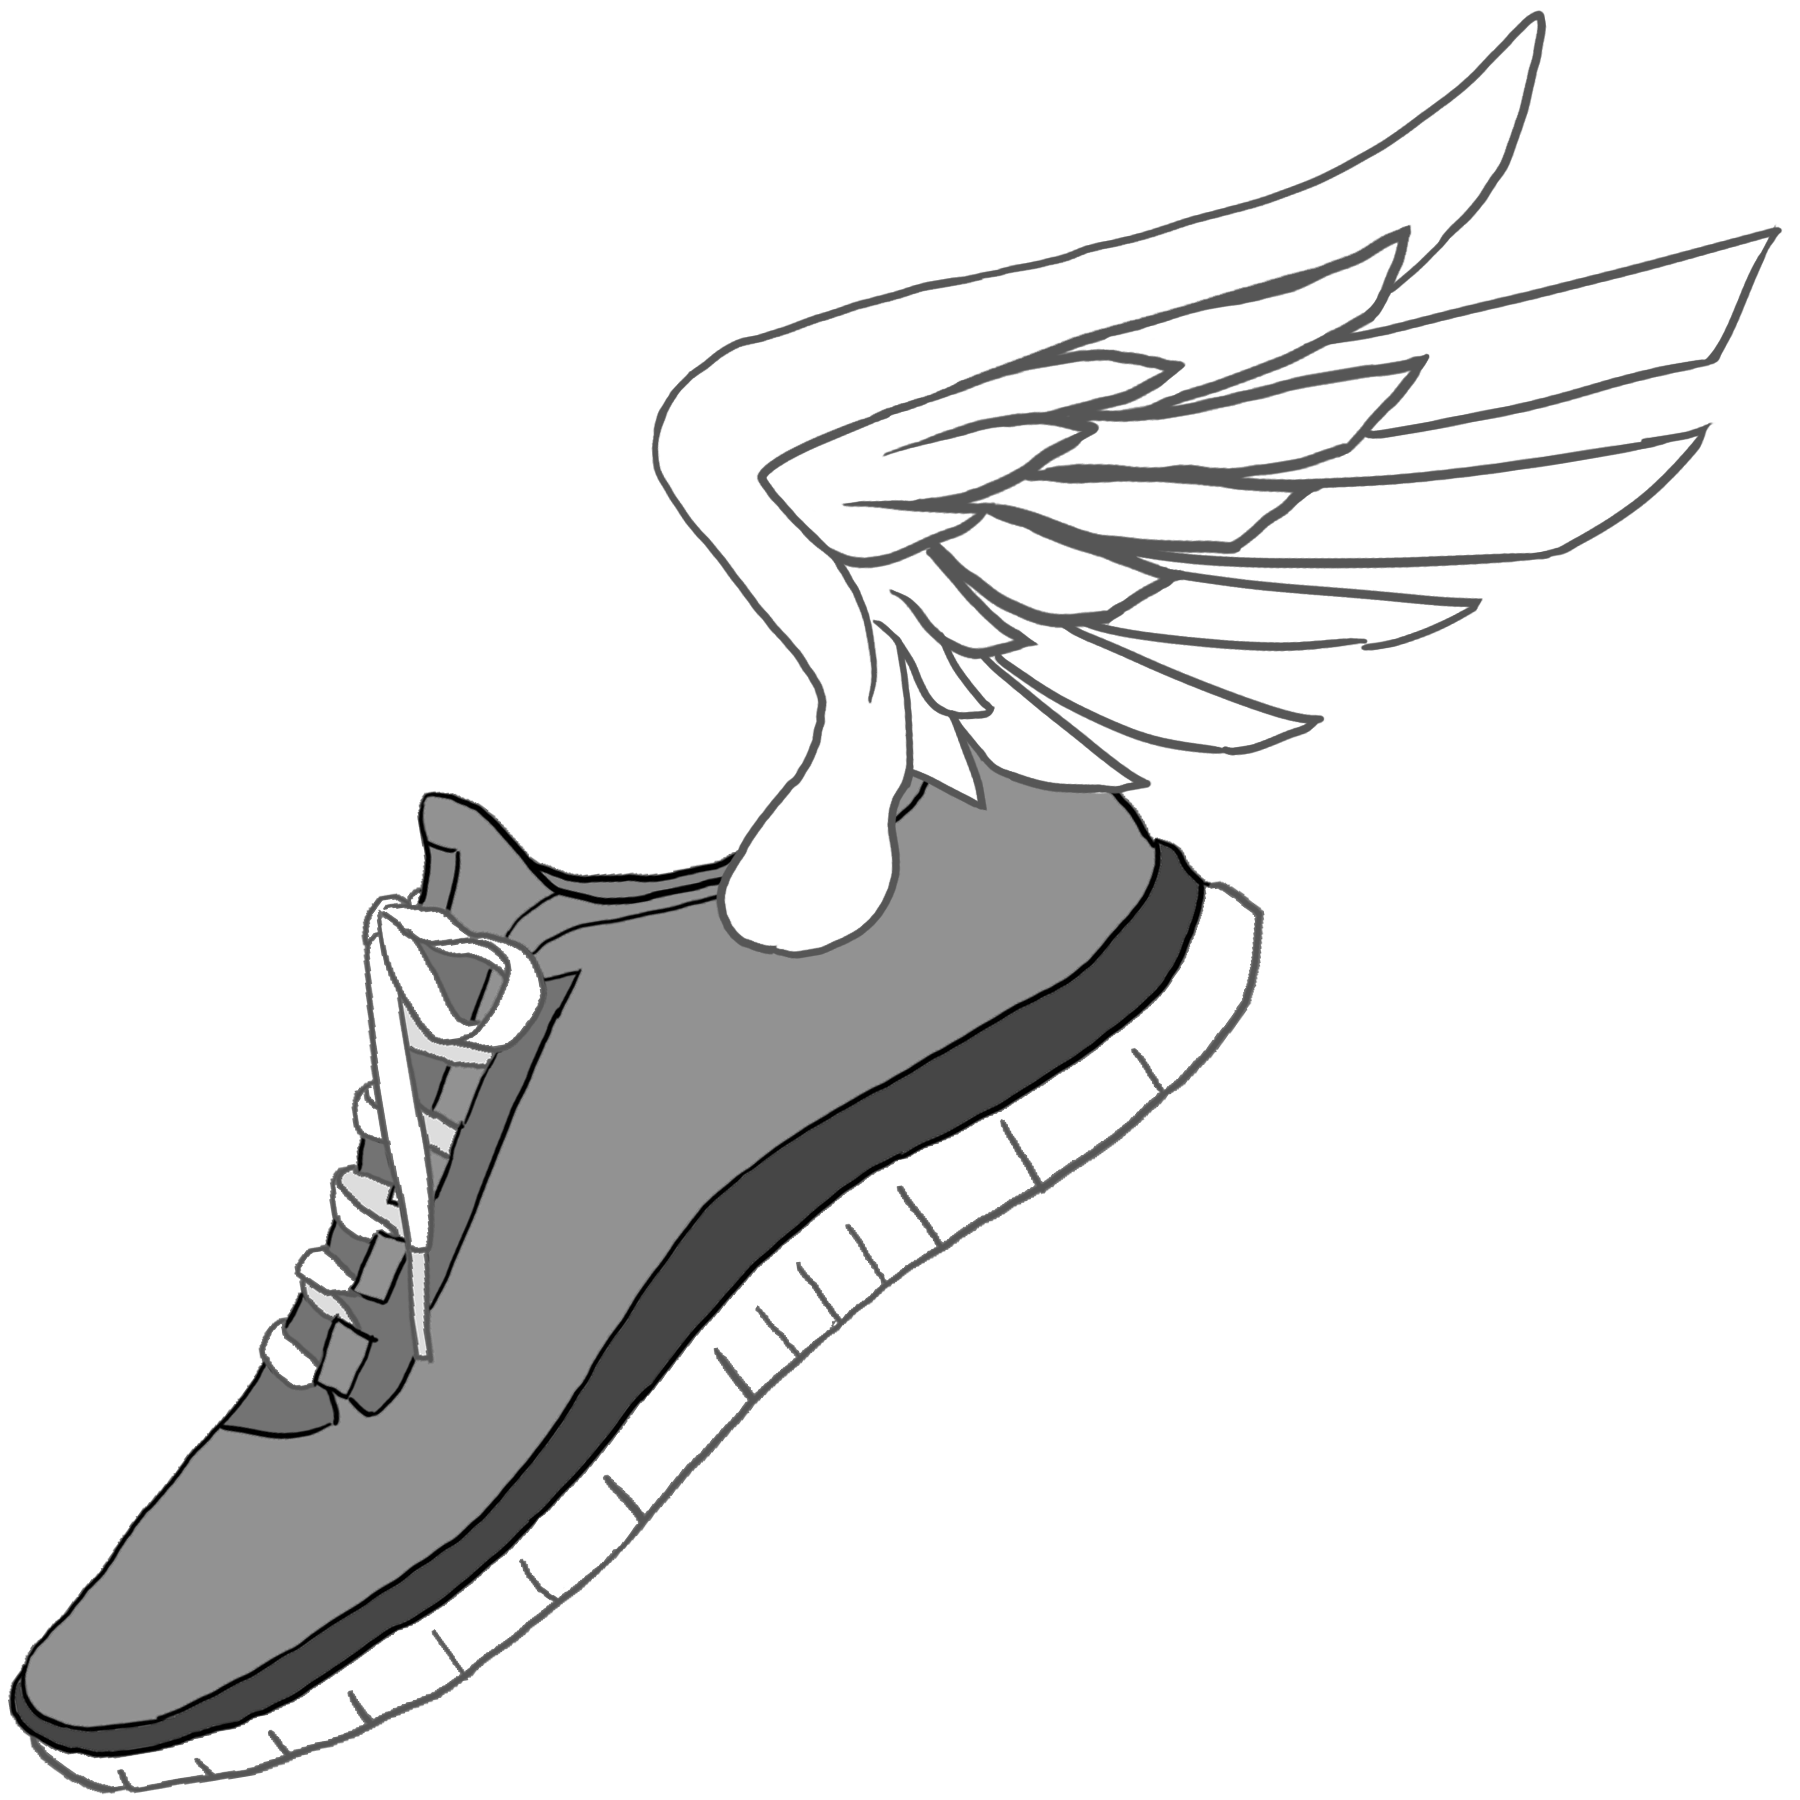 Tennis Shoe with Wings Logo - LogoDix